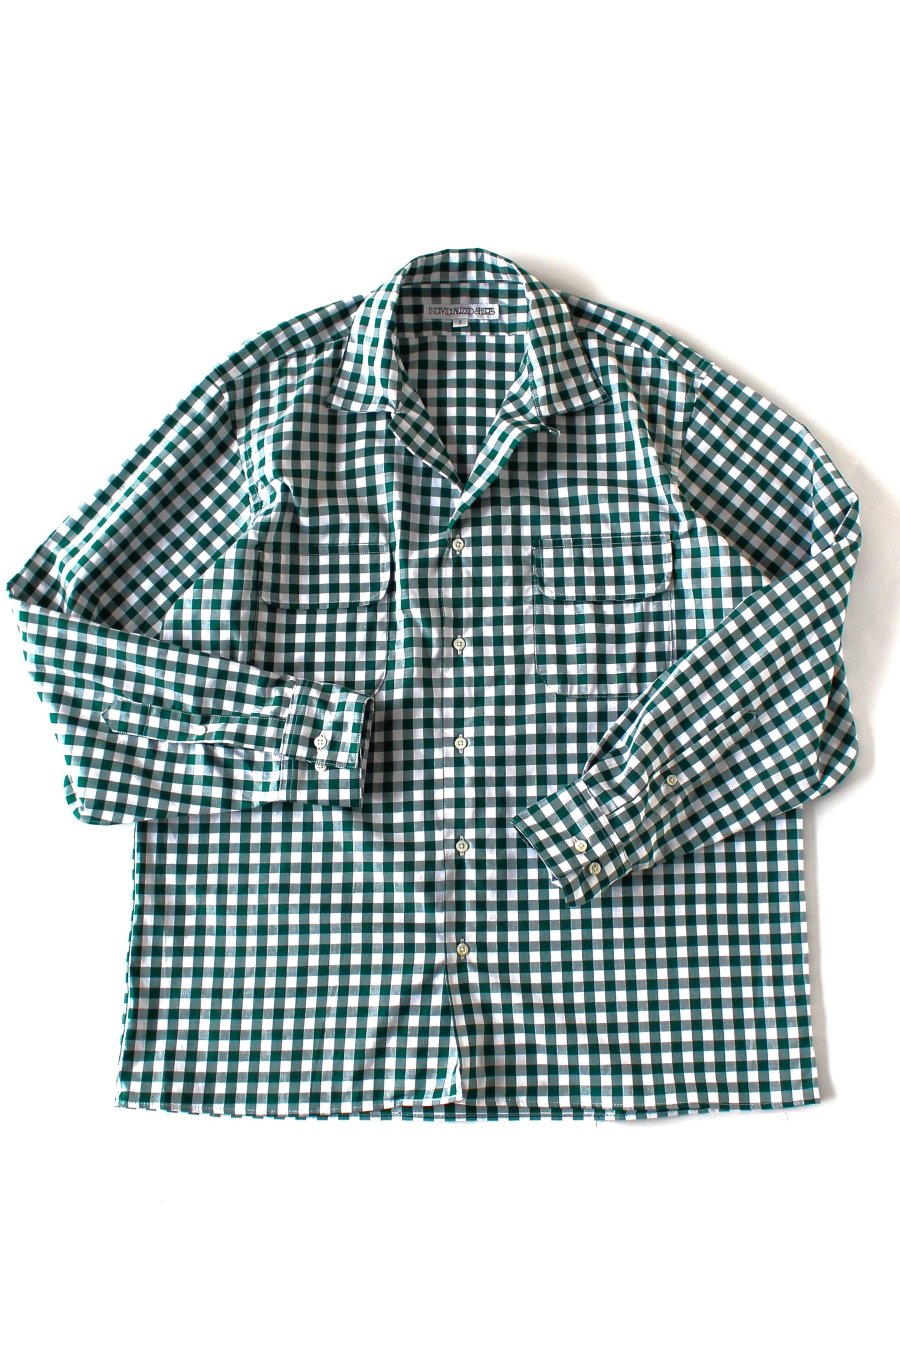 INDIVIDUALIZED SHIRTS インディビジュアライズドシャツシャツ